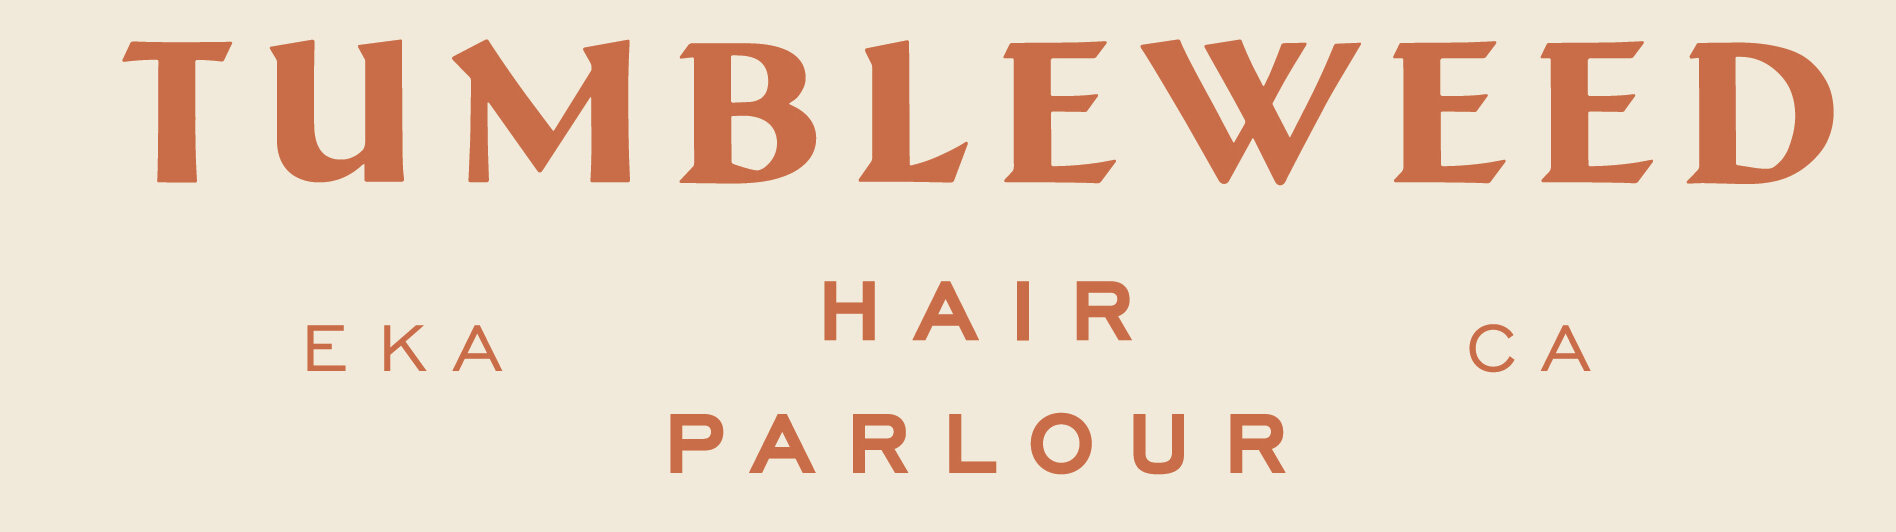 Tumbleweed Hair Parlour